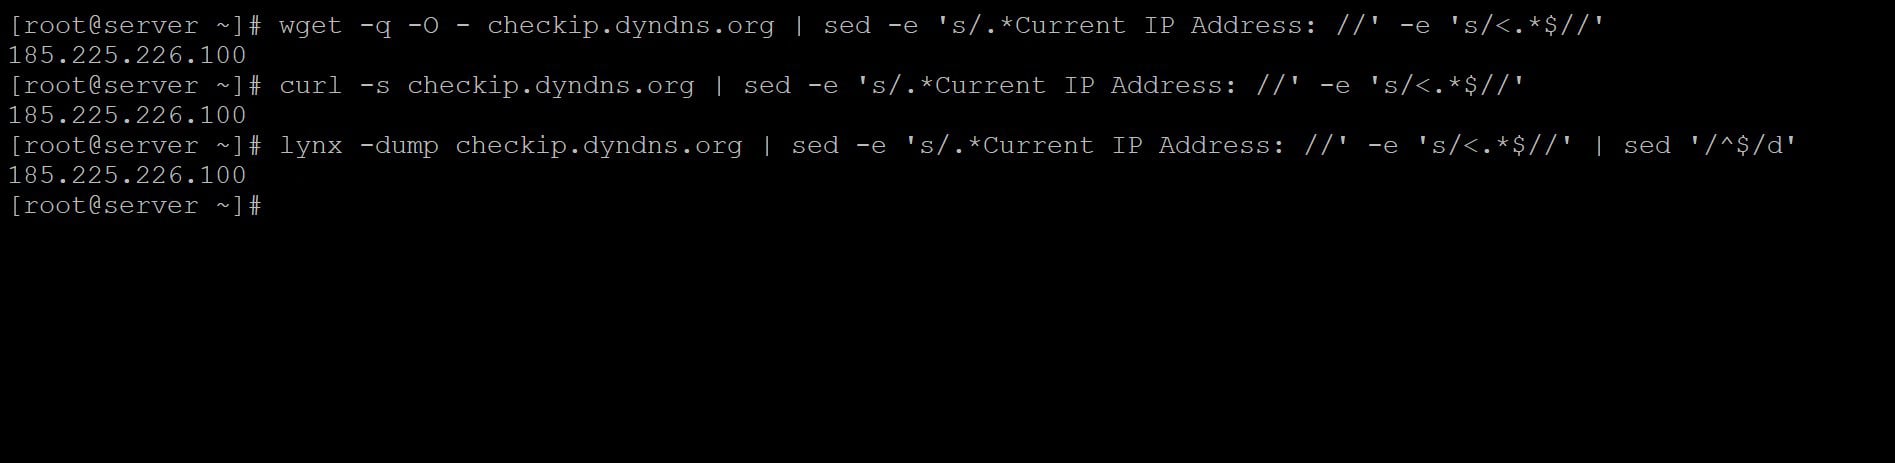 Linux get external ip Address using DynDNS